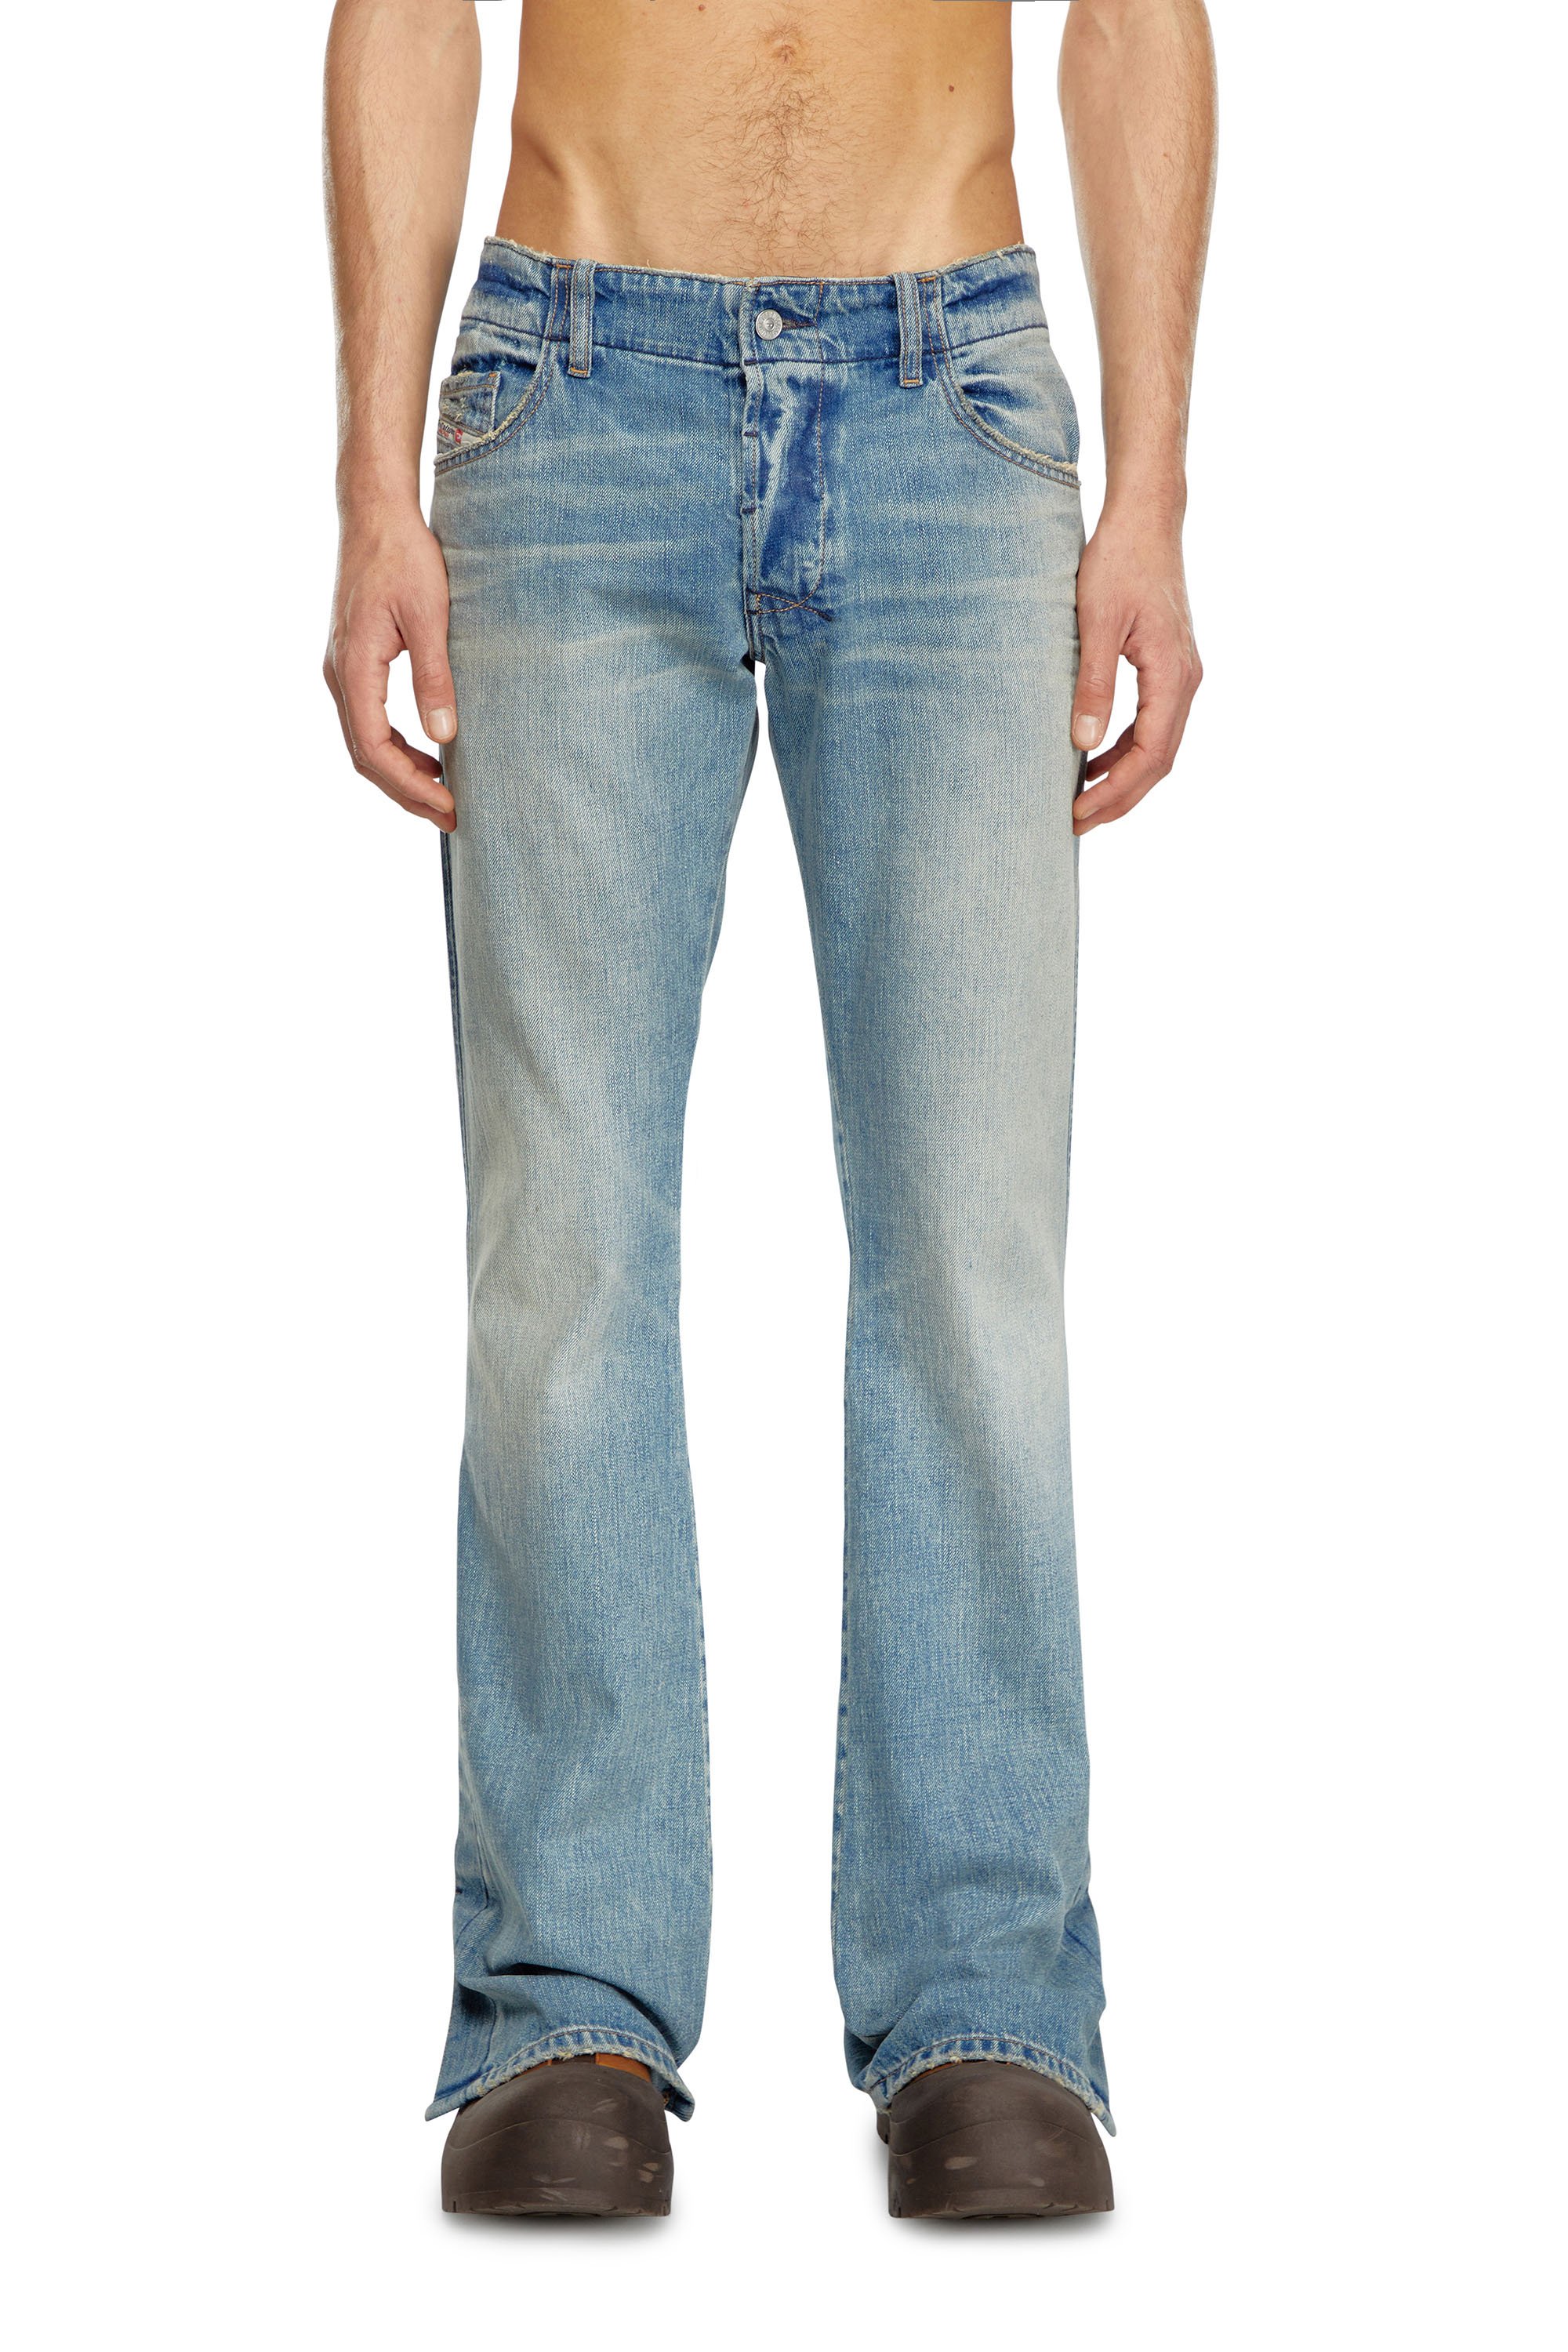 Diesel - Bootcut Jeans D-Backler 0GRDN, Hombre Bootcut Jeans - D-Backler in Azul marino - Image 1